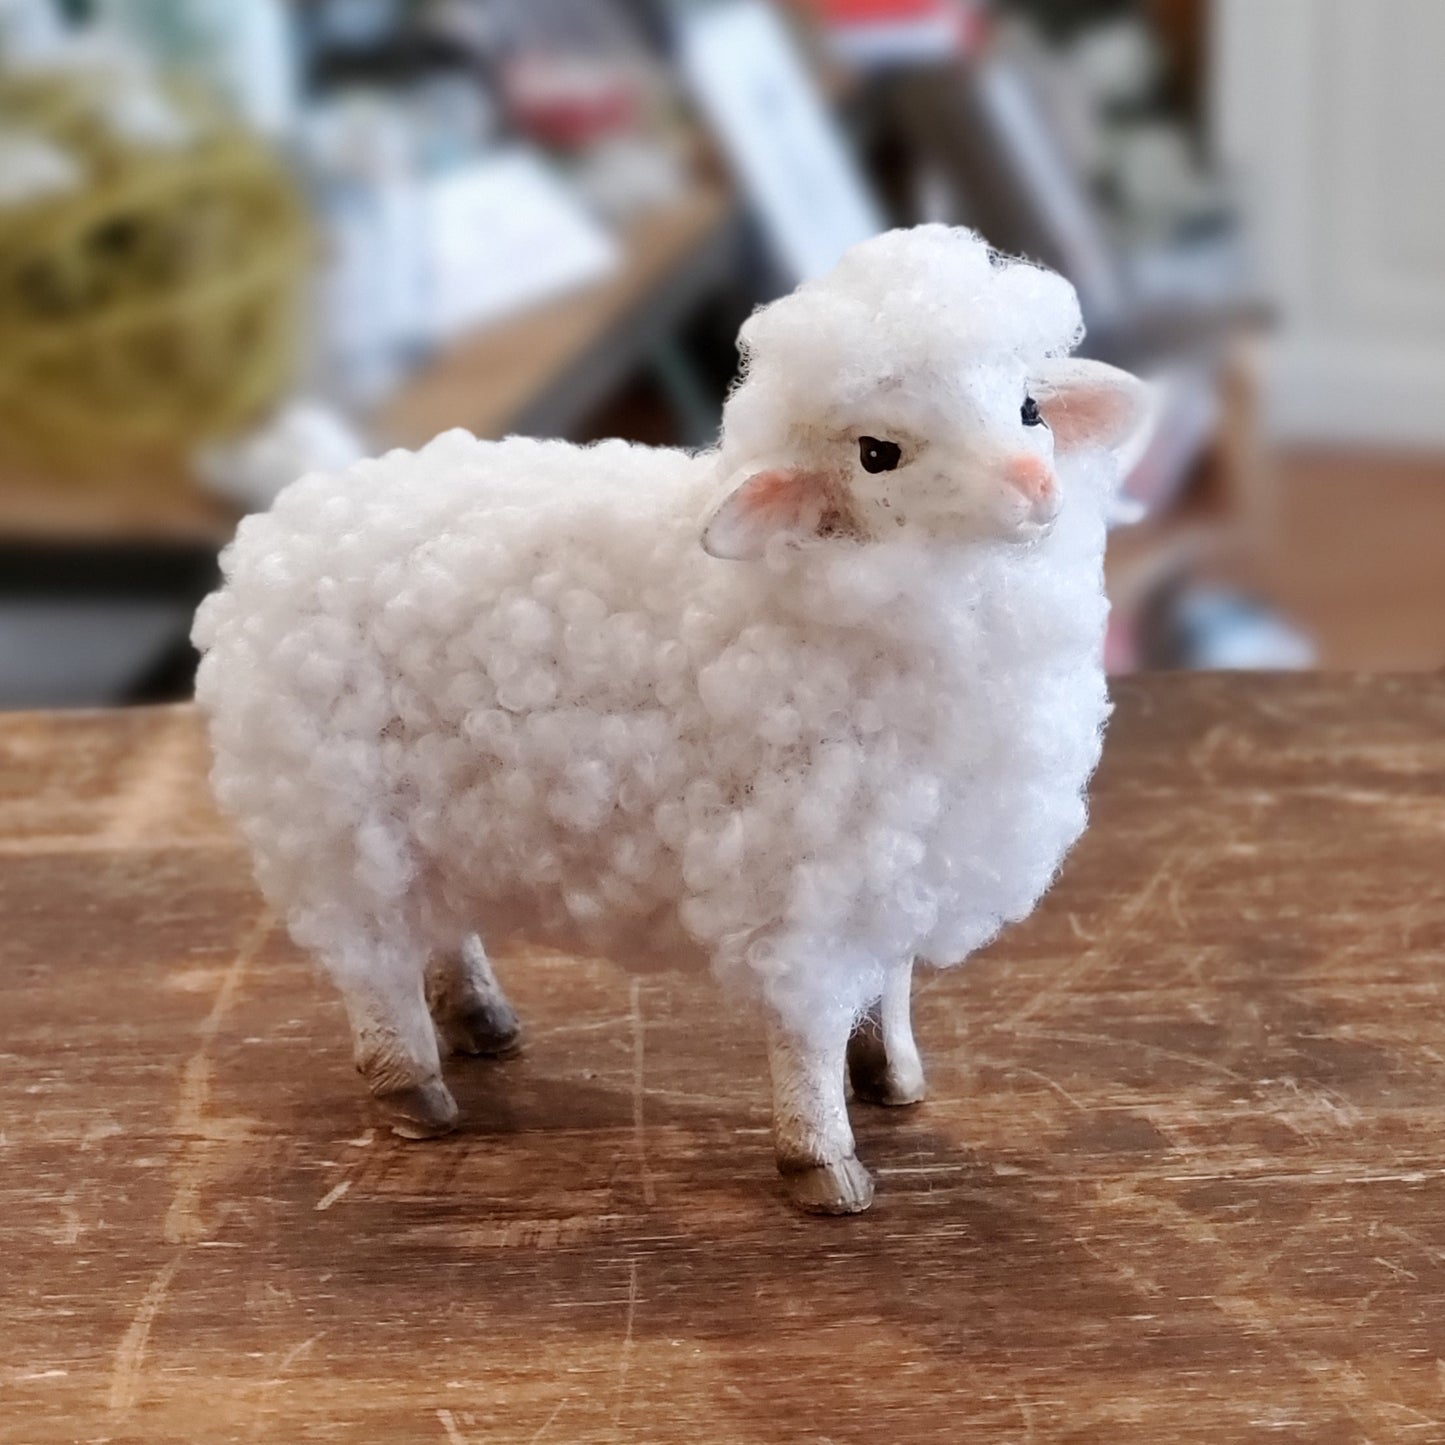 Wooly Sheep / Lamb (varies)